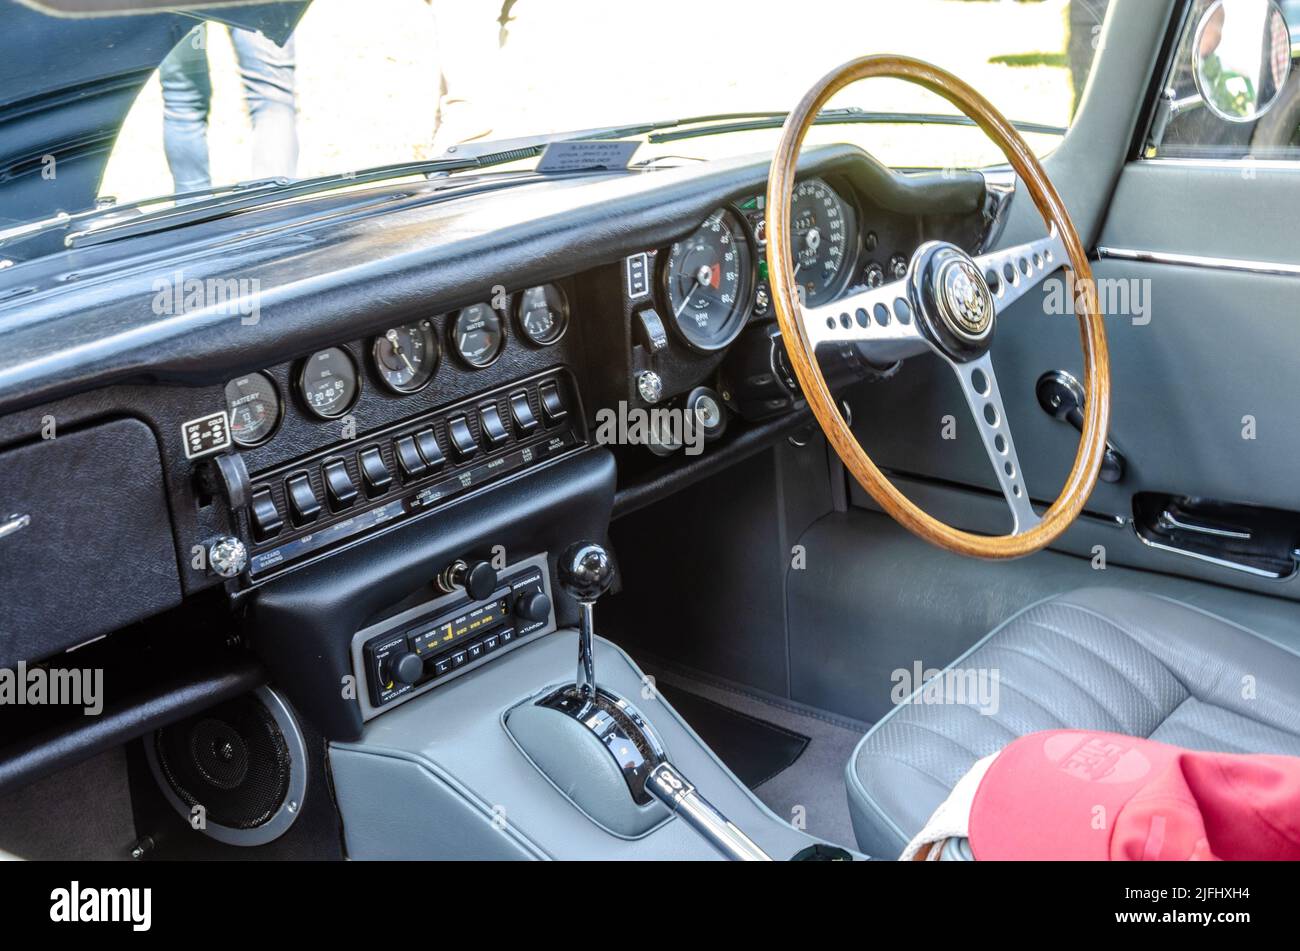 Vue du tableau de bord intérieur d'une voiture Jaguar E-Type classique avec volant en bois et lignes de commutateurs et de jauges. Banque D'Images